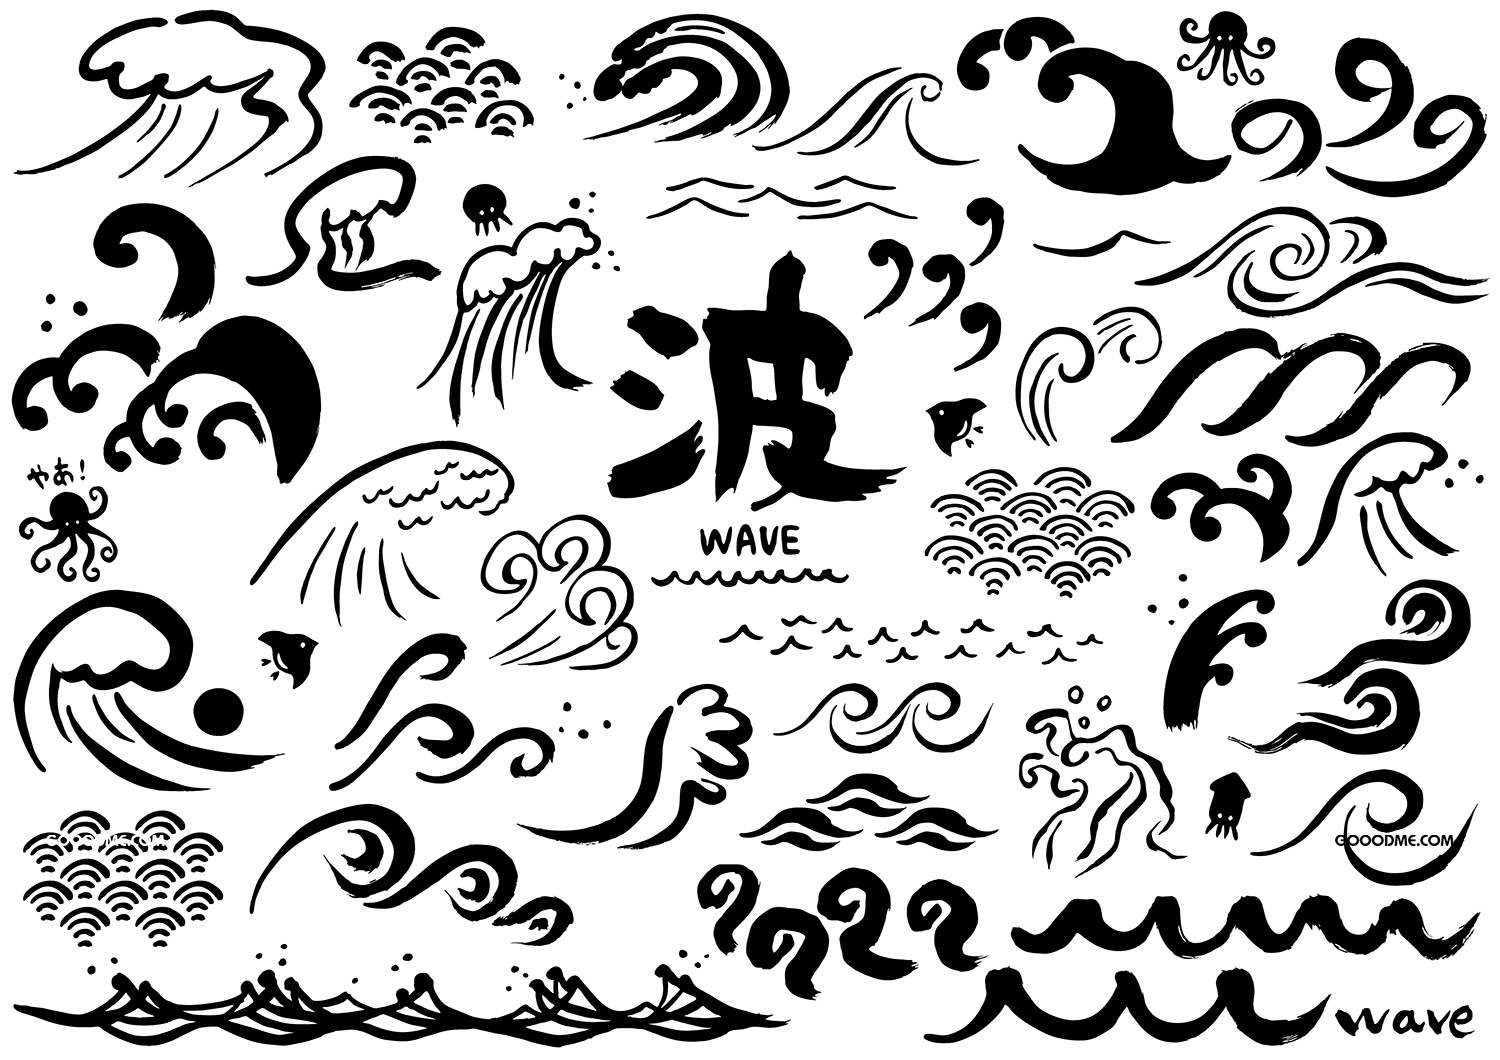 55 日系手绘海浪波浪矢量元素素材